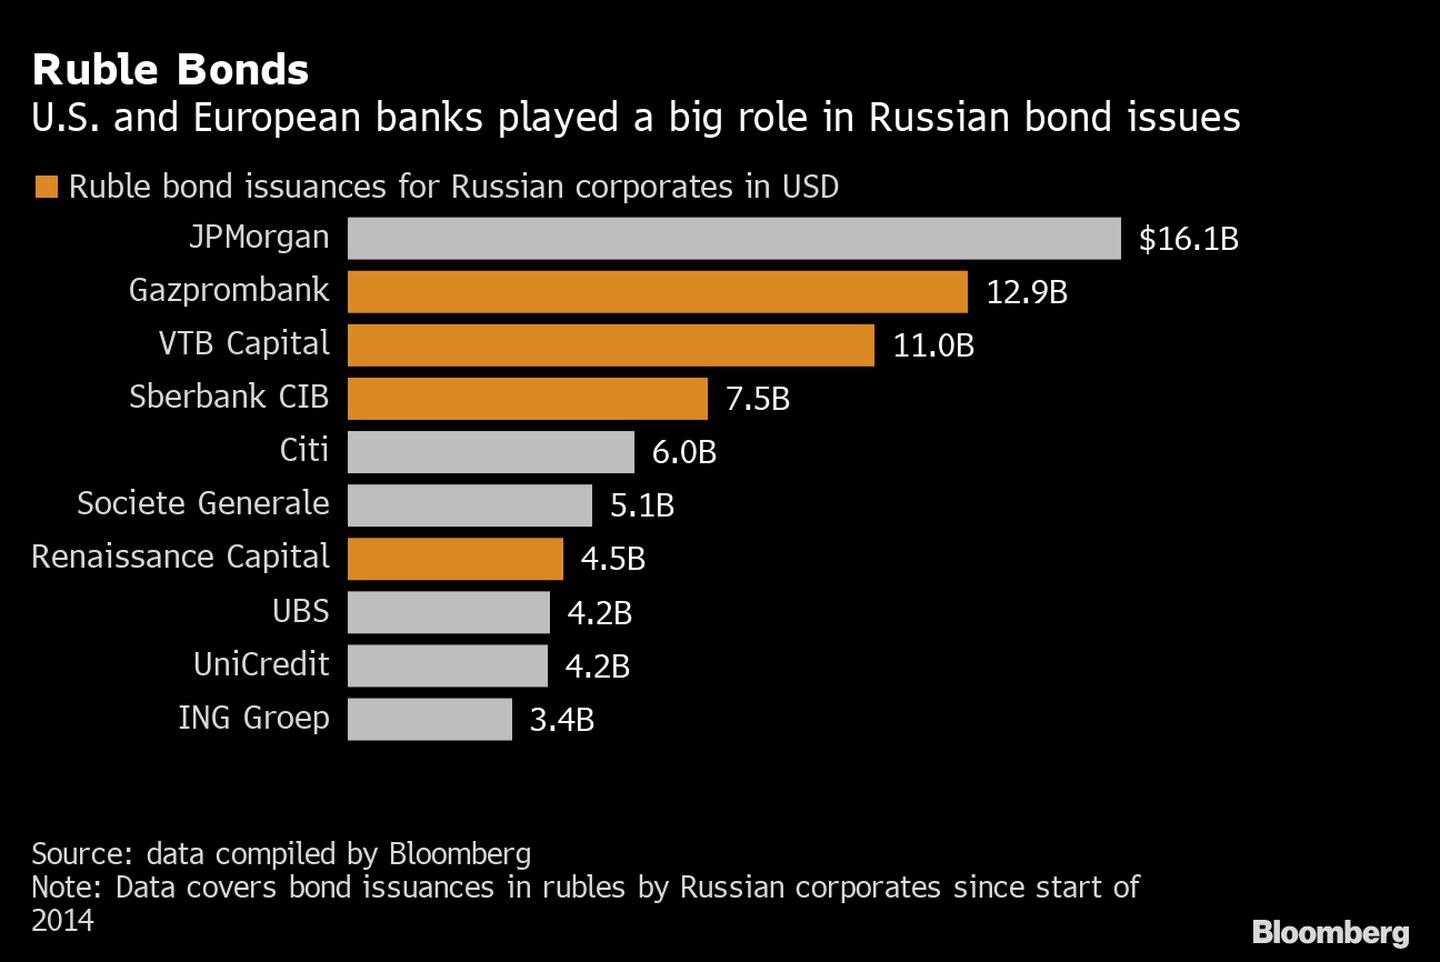 Emissão de títulos de rublo para empresas russas em dólaresdfd